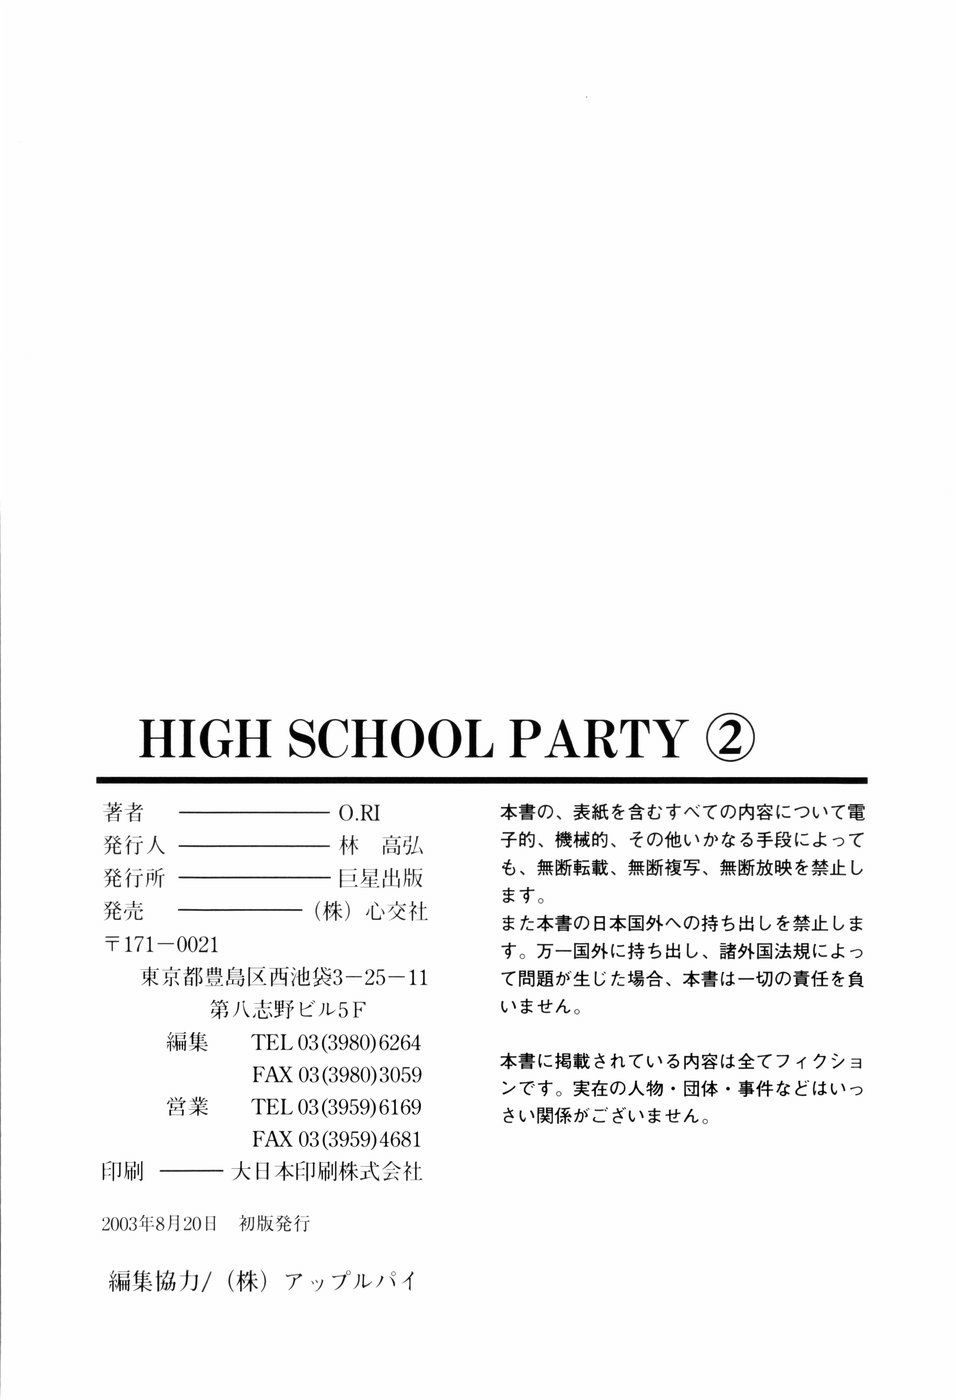 【O.Ri】高校パーティー2